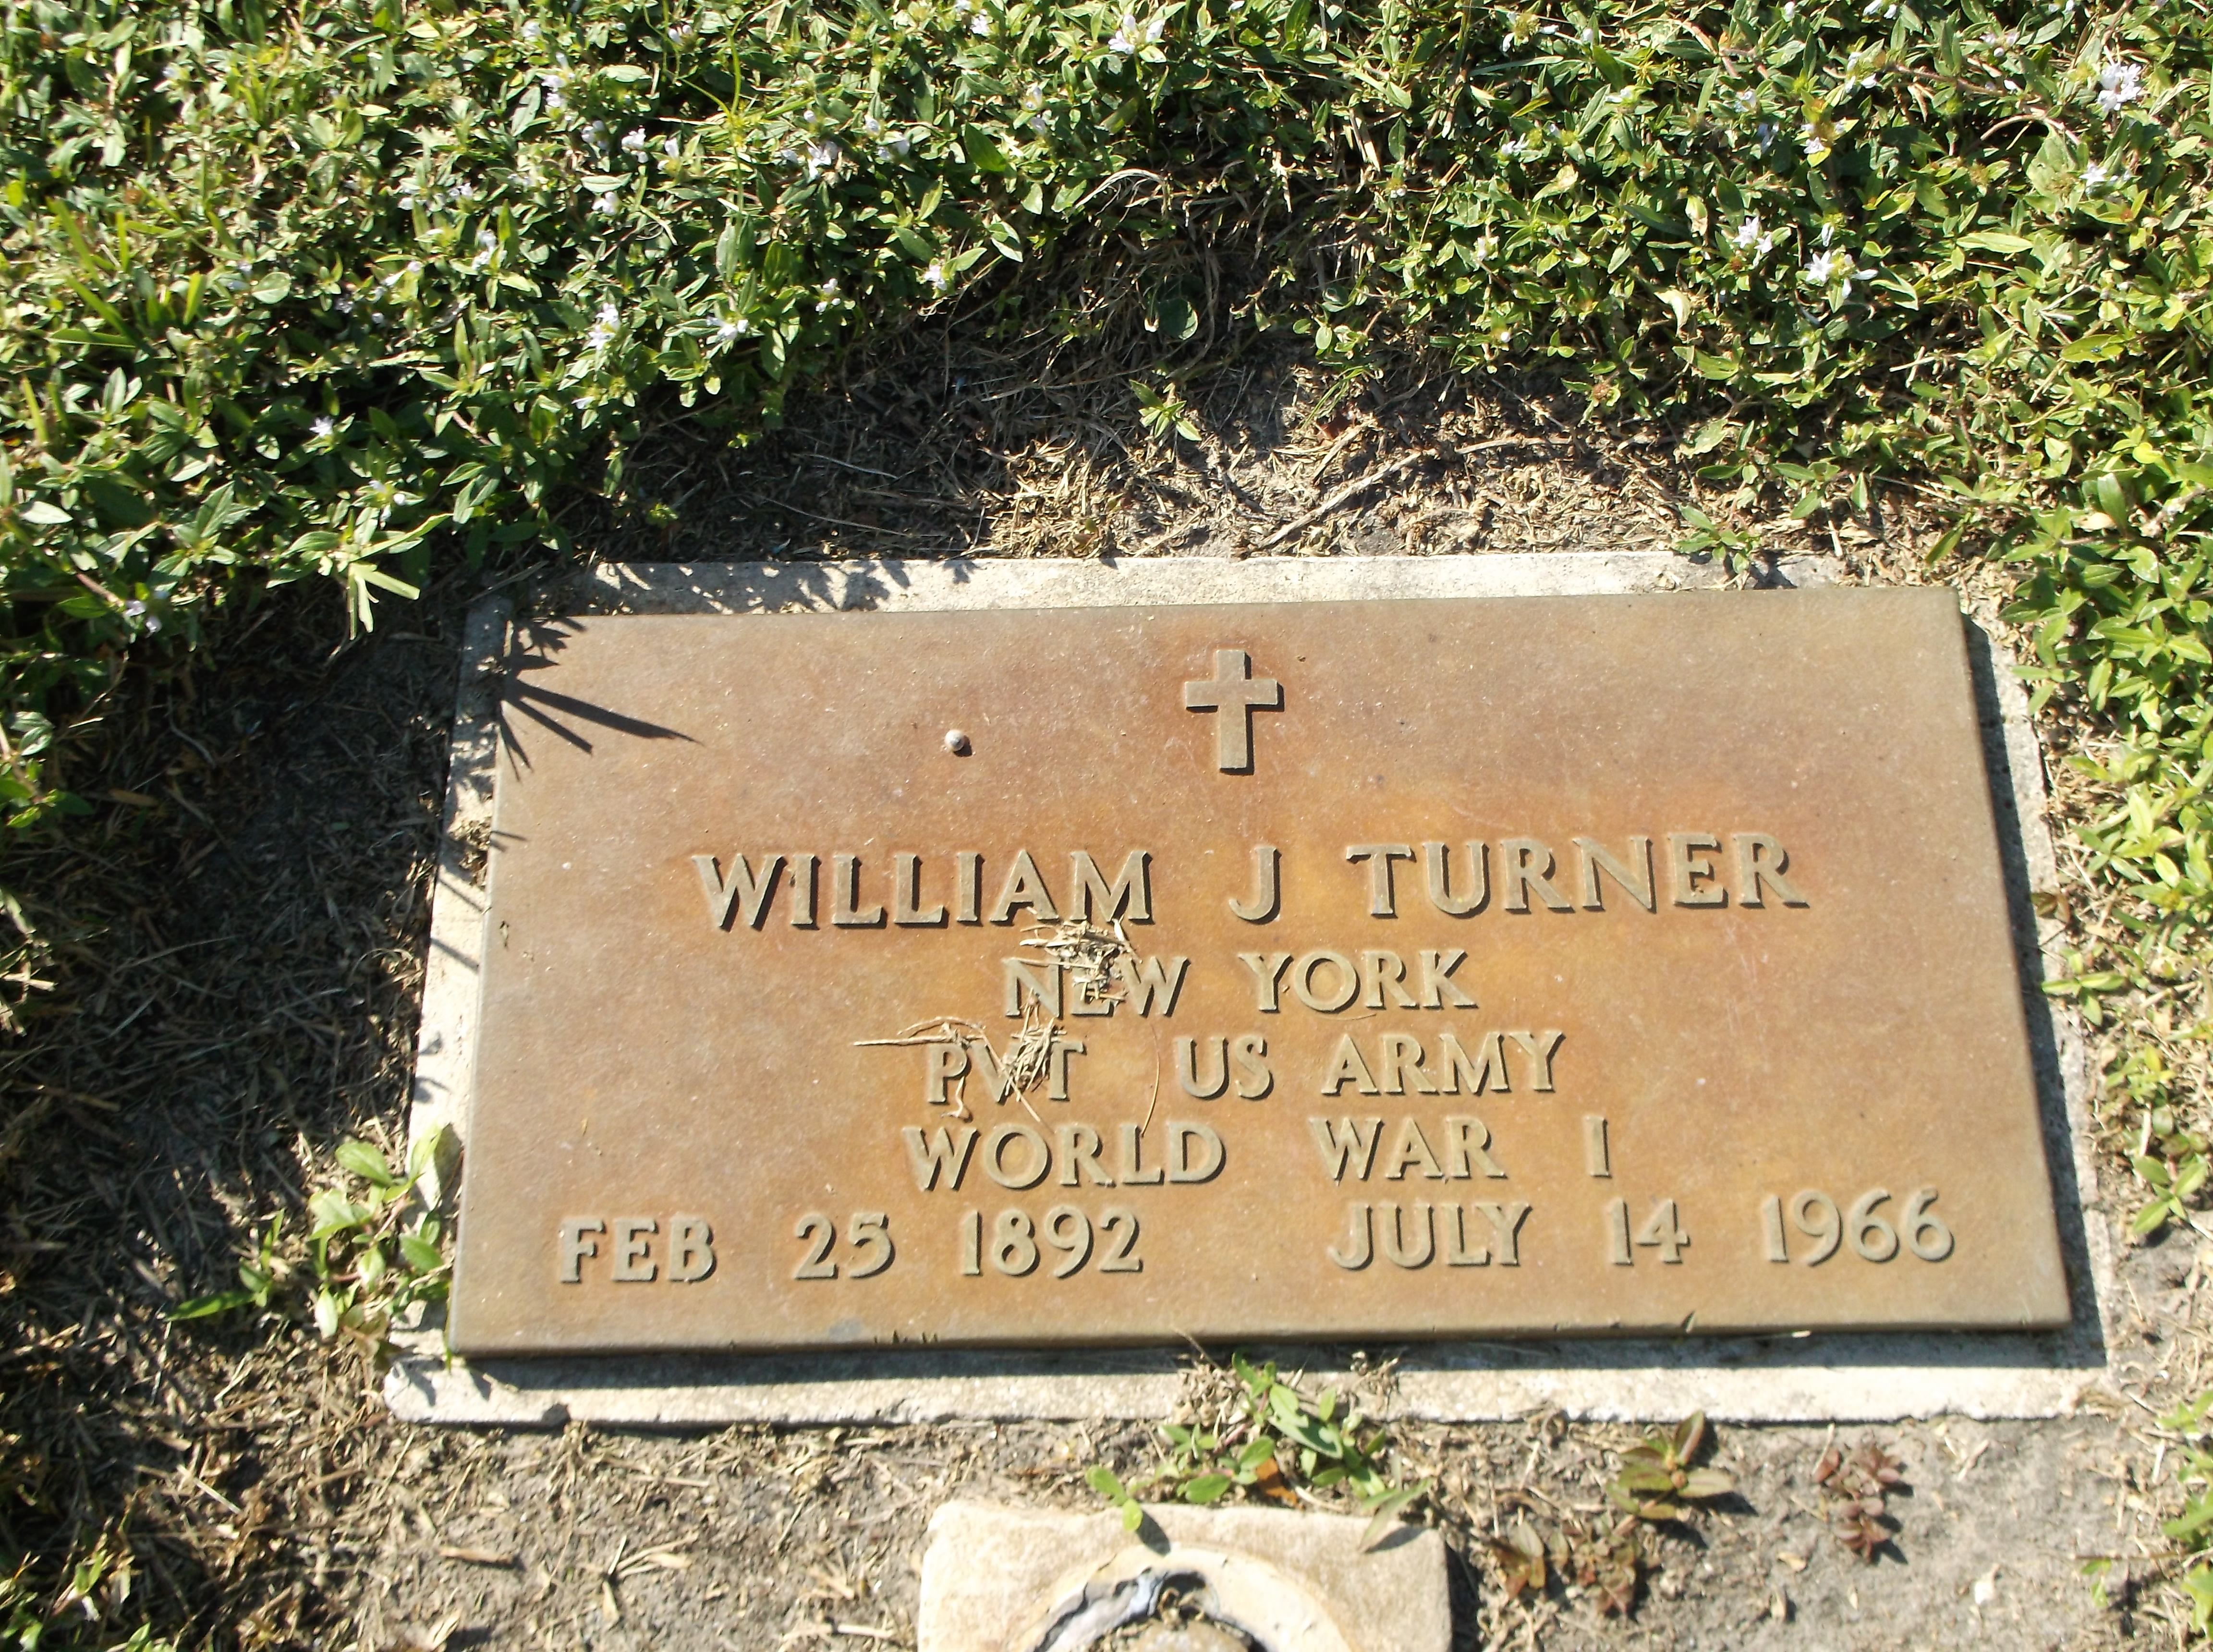 William J Turner